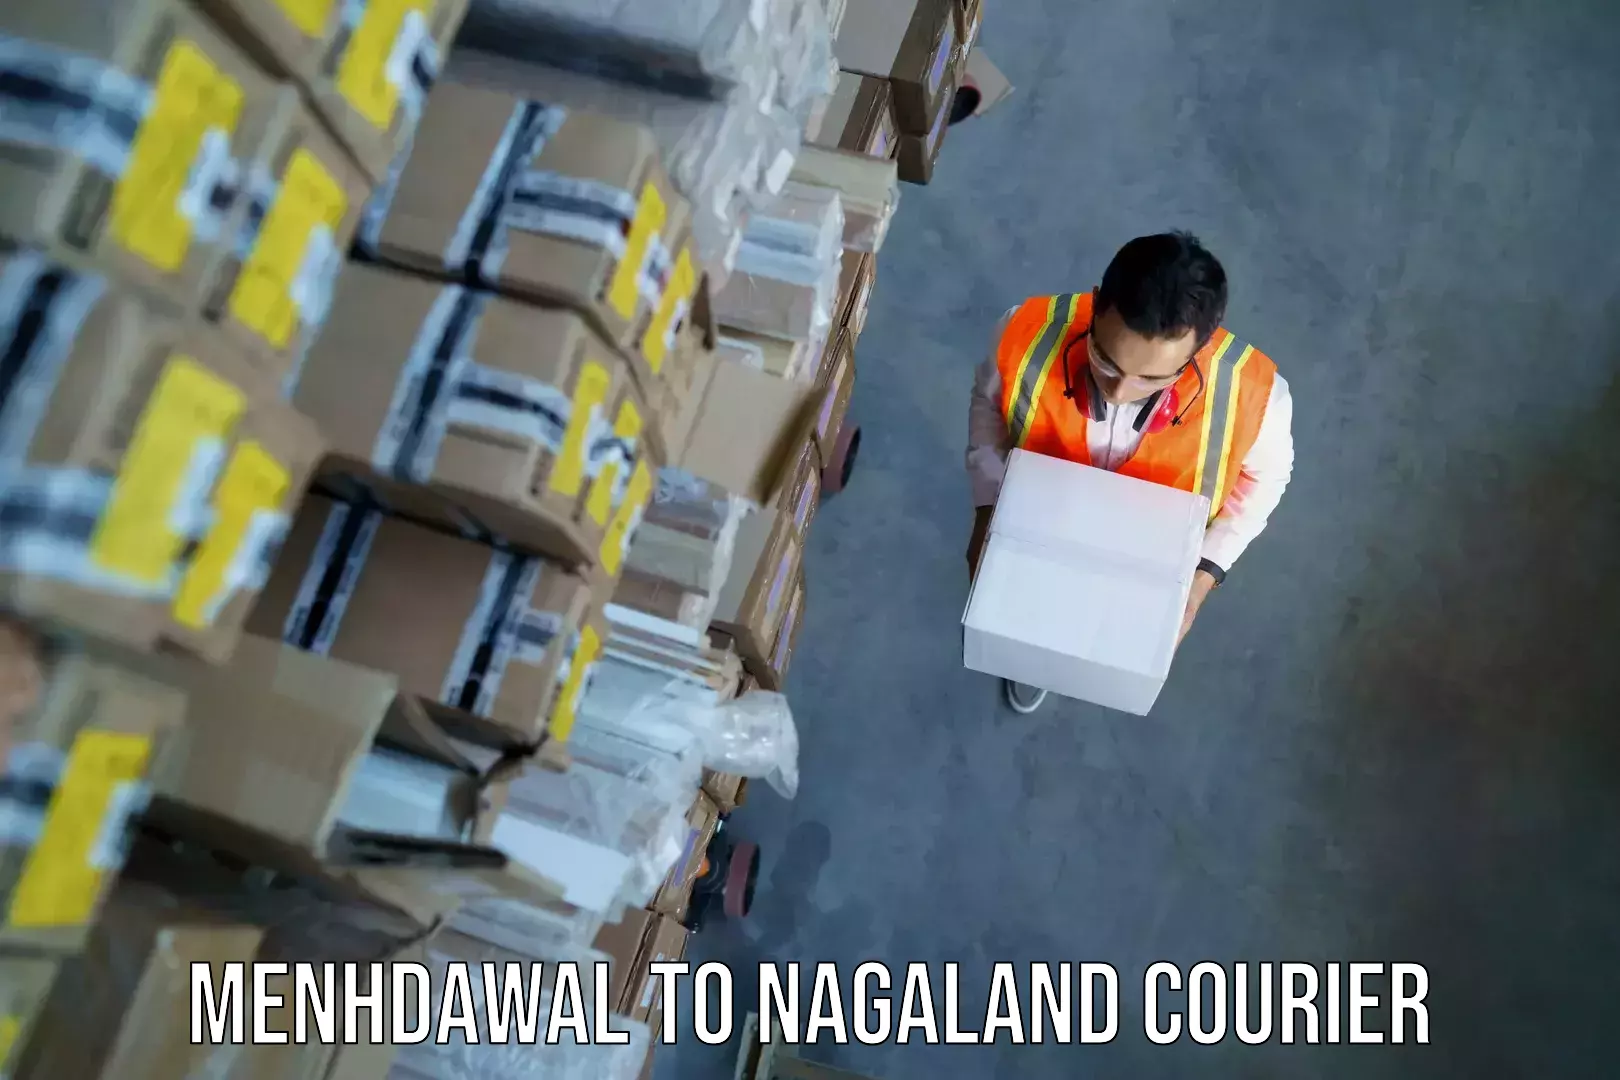 Emergency baggage service Menhdawal to NIT Nagaland